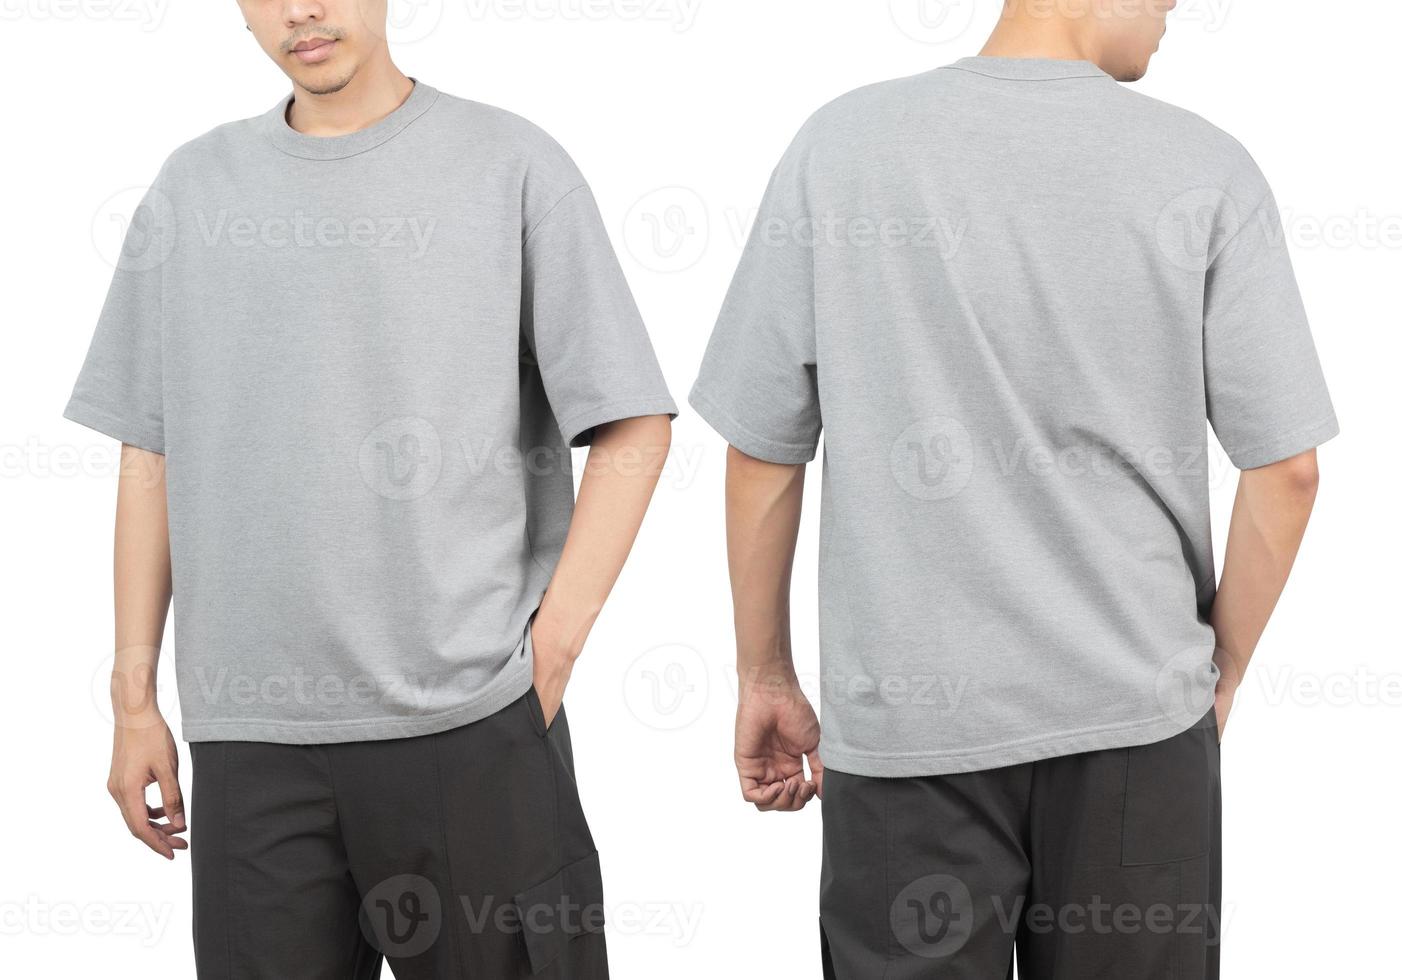 Joven en gris maqueta de camiseta de gran tamaño delante y detrás utilizado como plantilla de diseño, aislado sobre fondo blanco con trazado de recorte foto